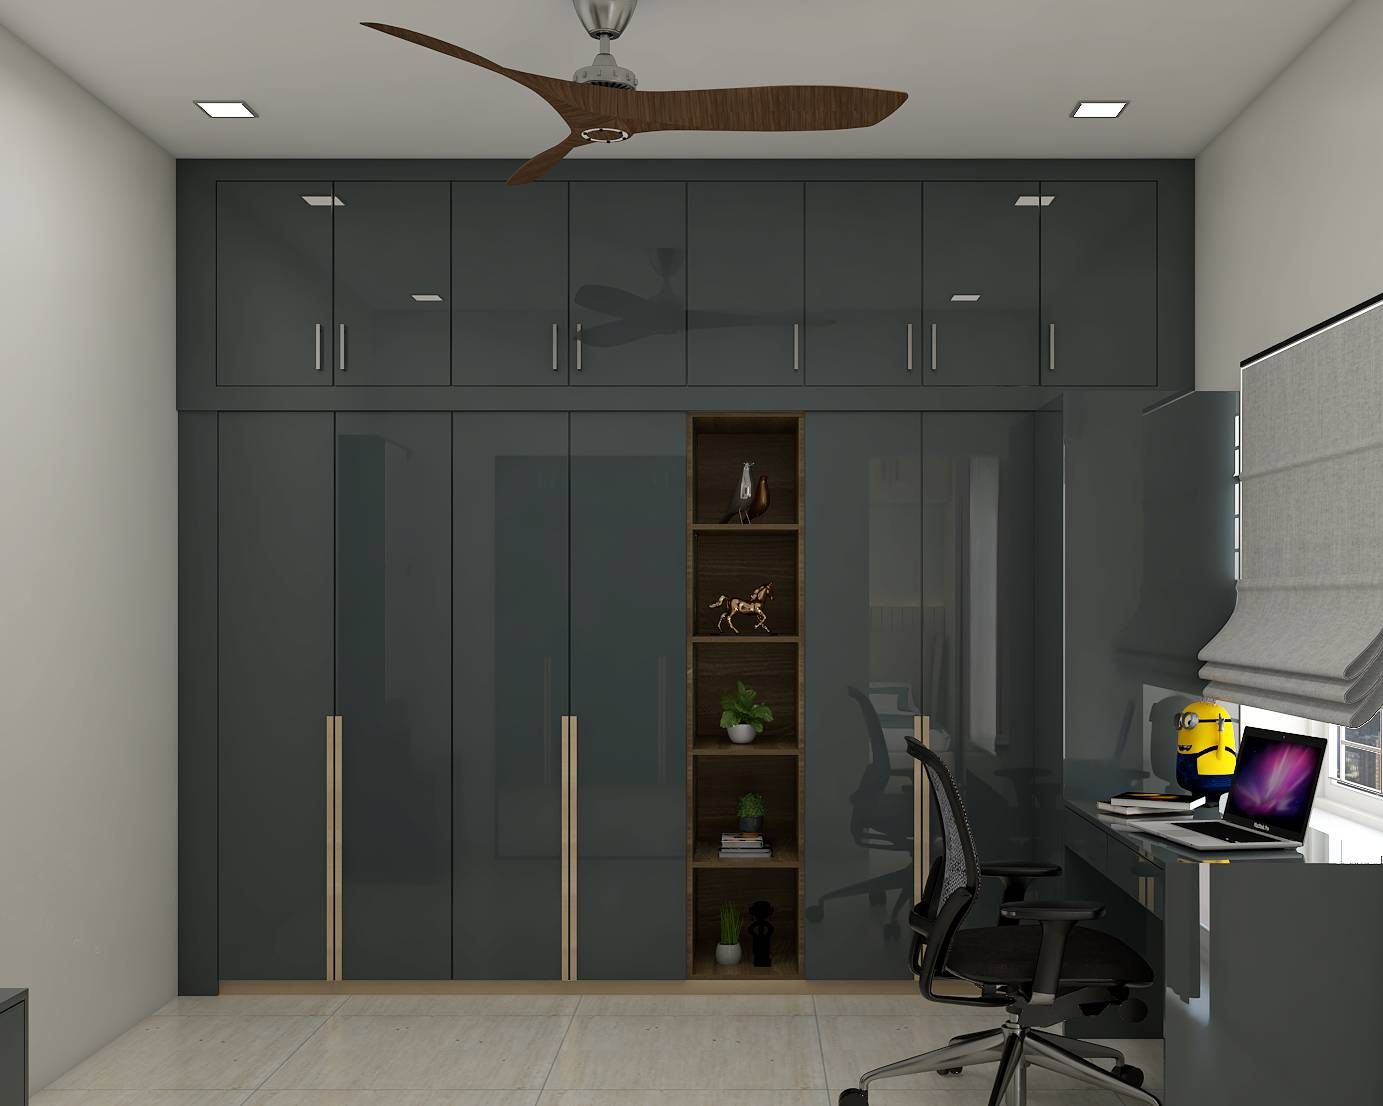 7-Door Modern Grey Wardrobe Design With Open Storage